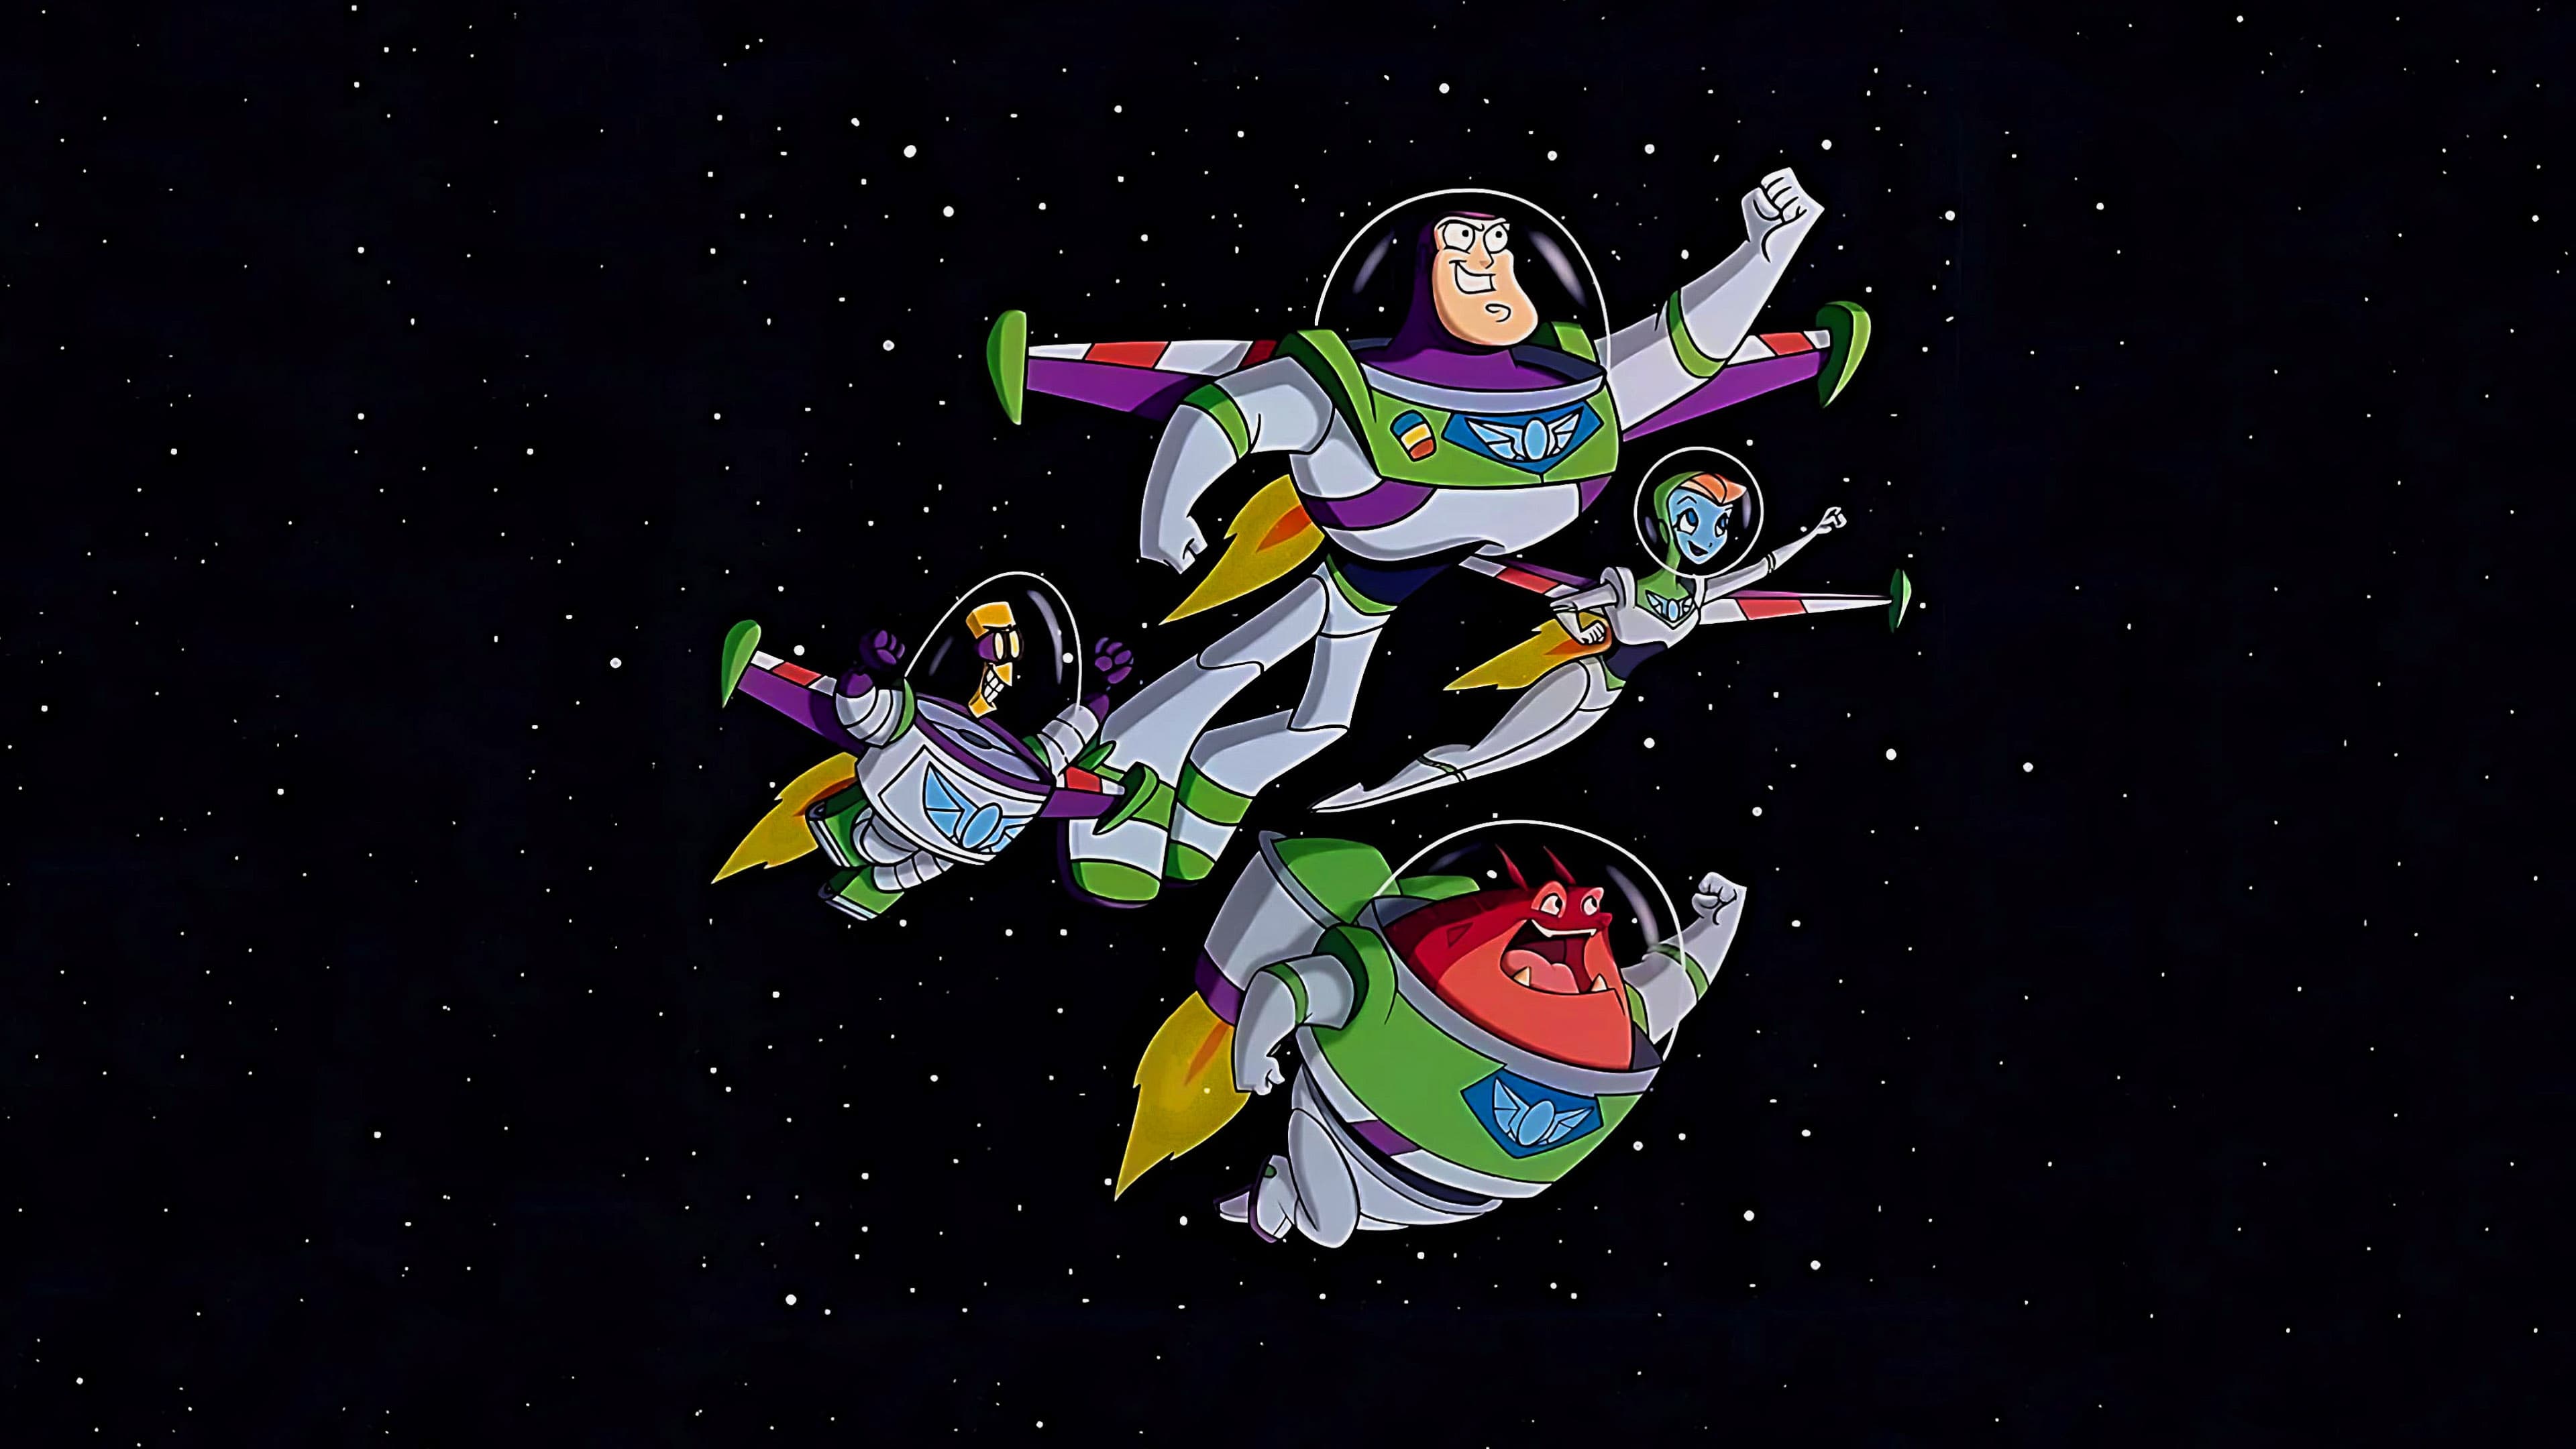 Buzz Lightyear da Comando Stellare